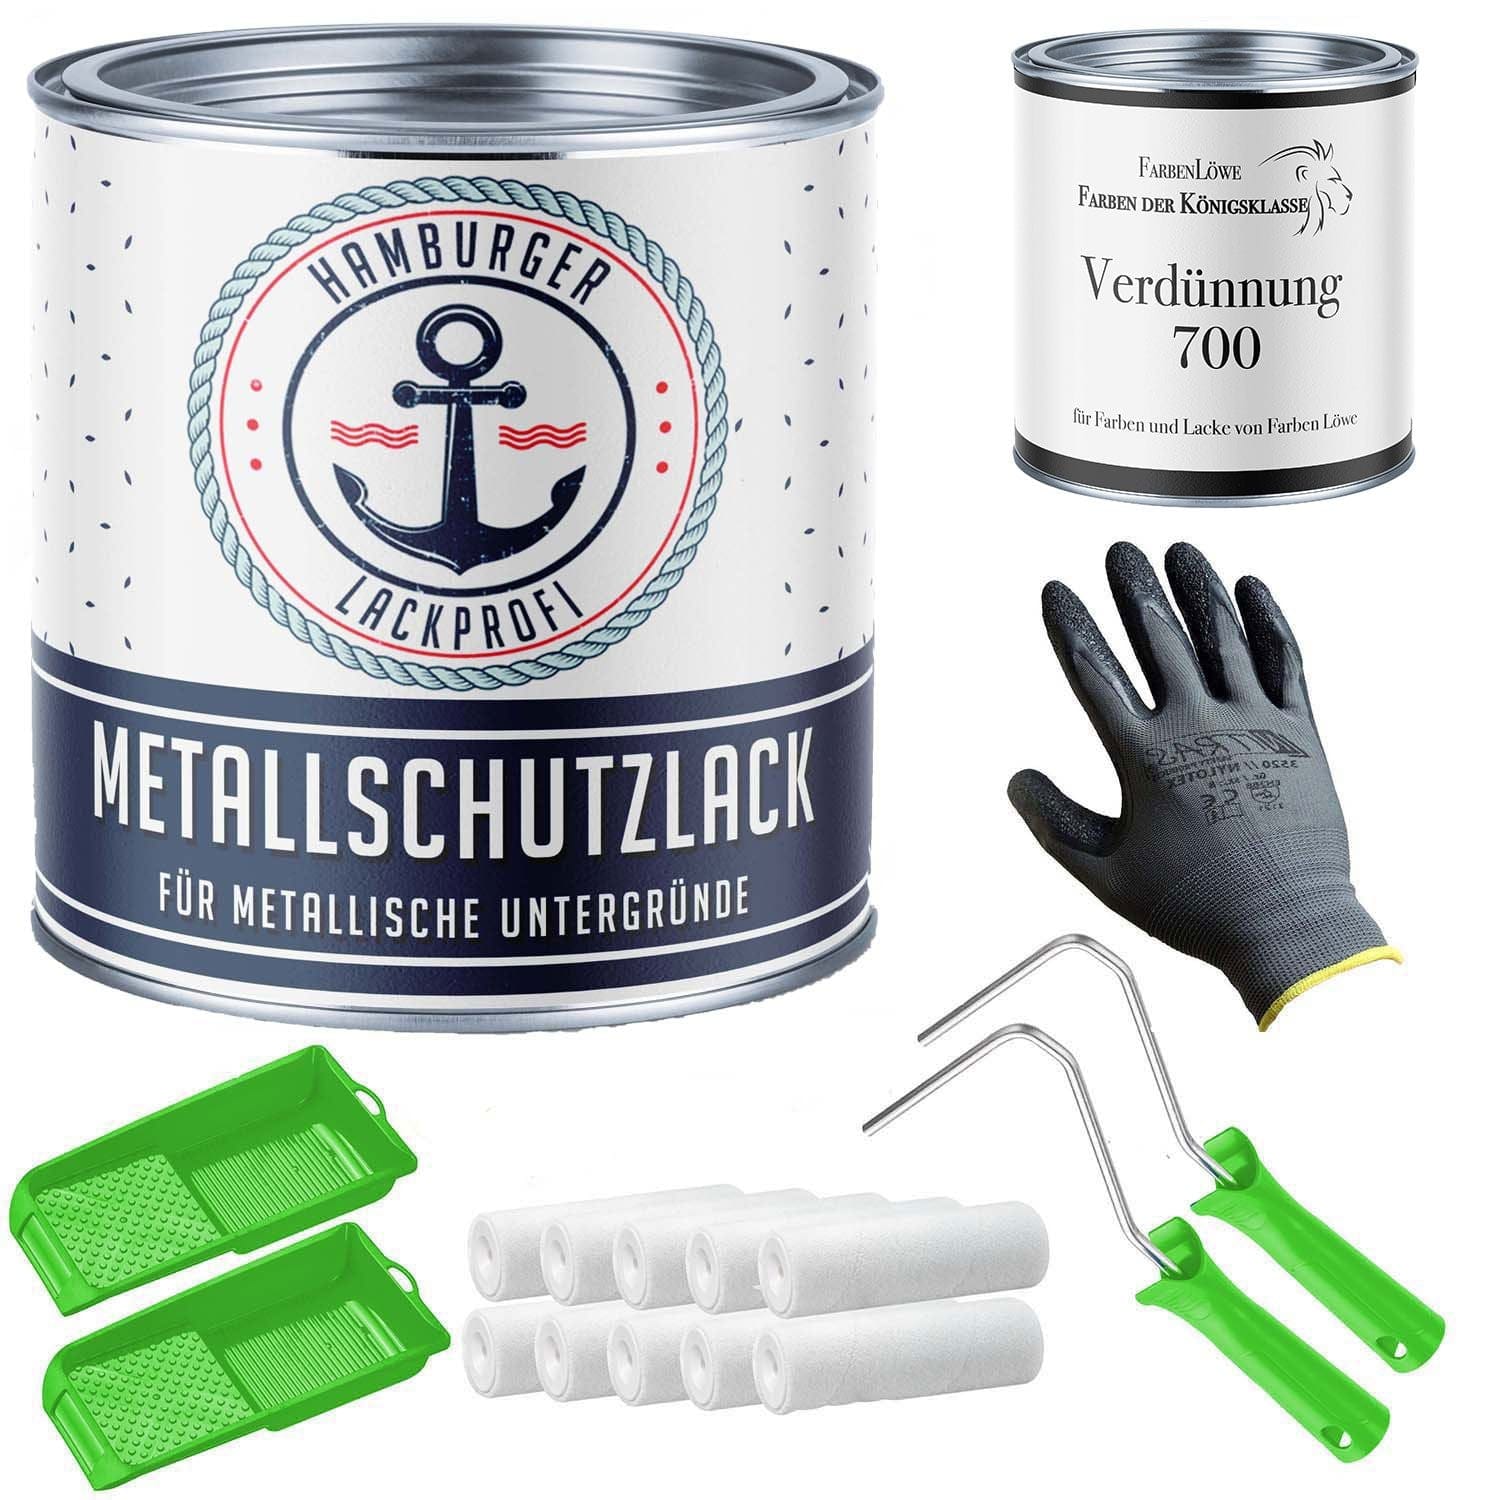 FARBENLÖWE Lacke & Beschichtungen Hamburger Lack-Profi Metallschutzlack in Reingrün RAL 6037 mit Lackierset (X300) & Verdünnung (1 L) - 30% Sparangebot